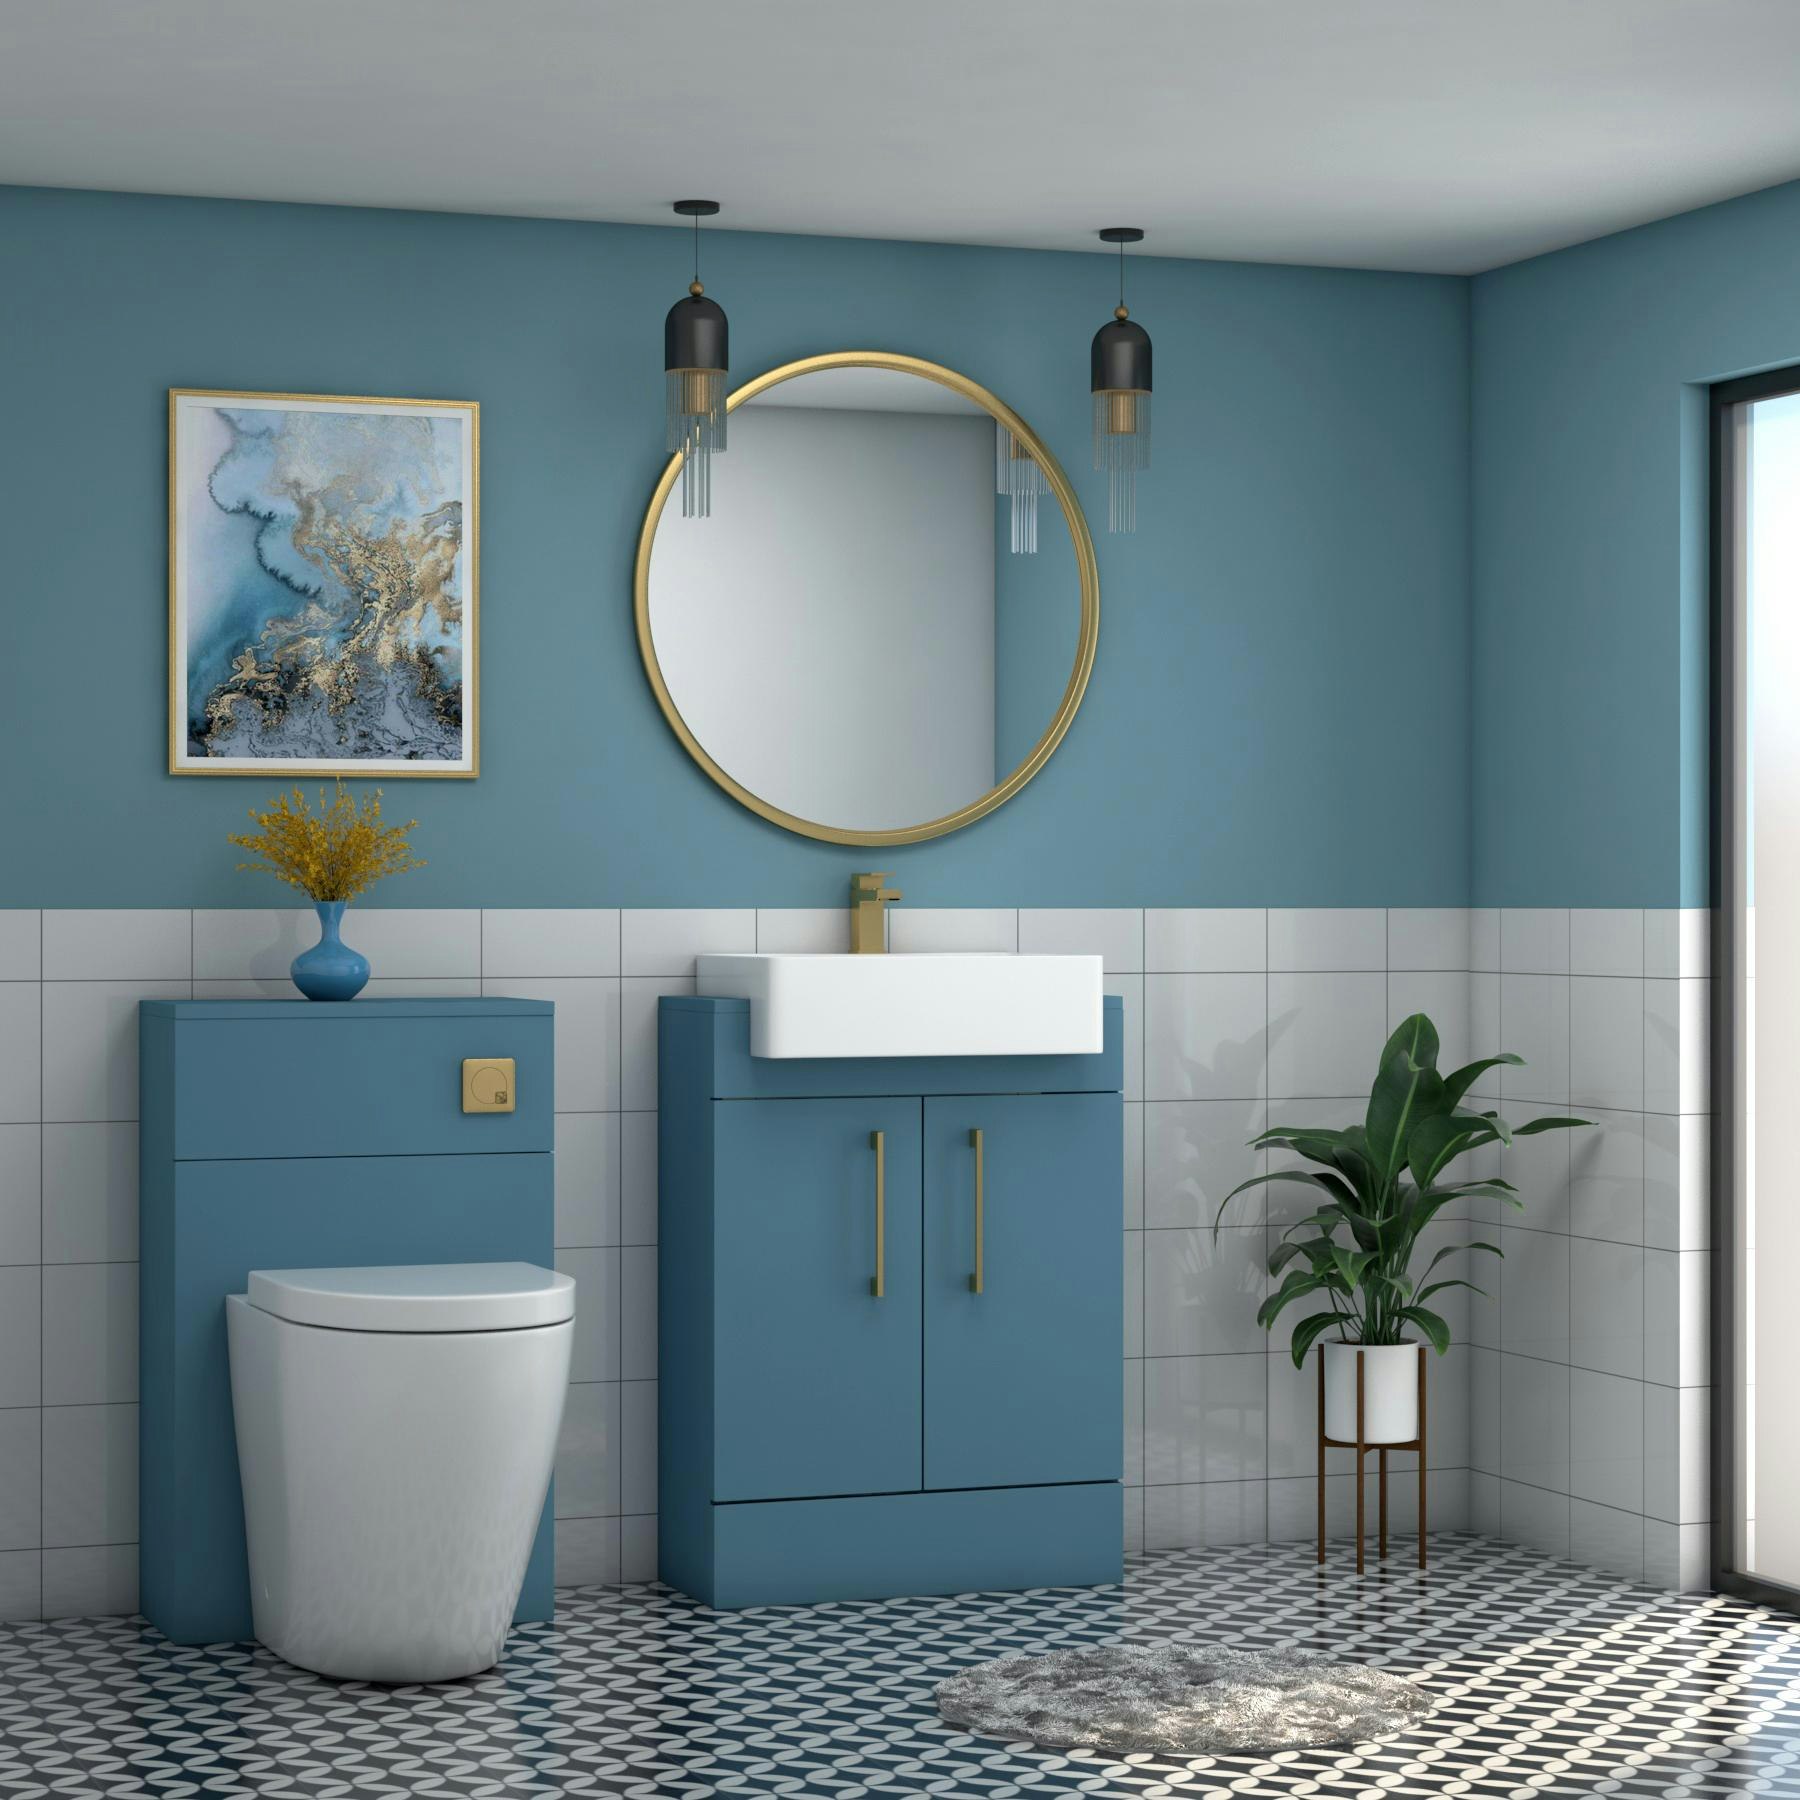 Elena 600mm Satin Blue Floor Standing Vanity Unit 2 Door With Semi Recessed Basin - Multiple Handles